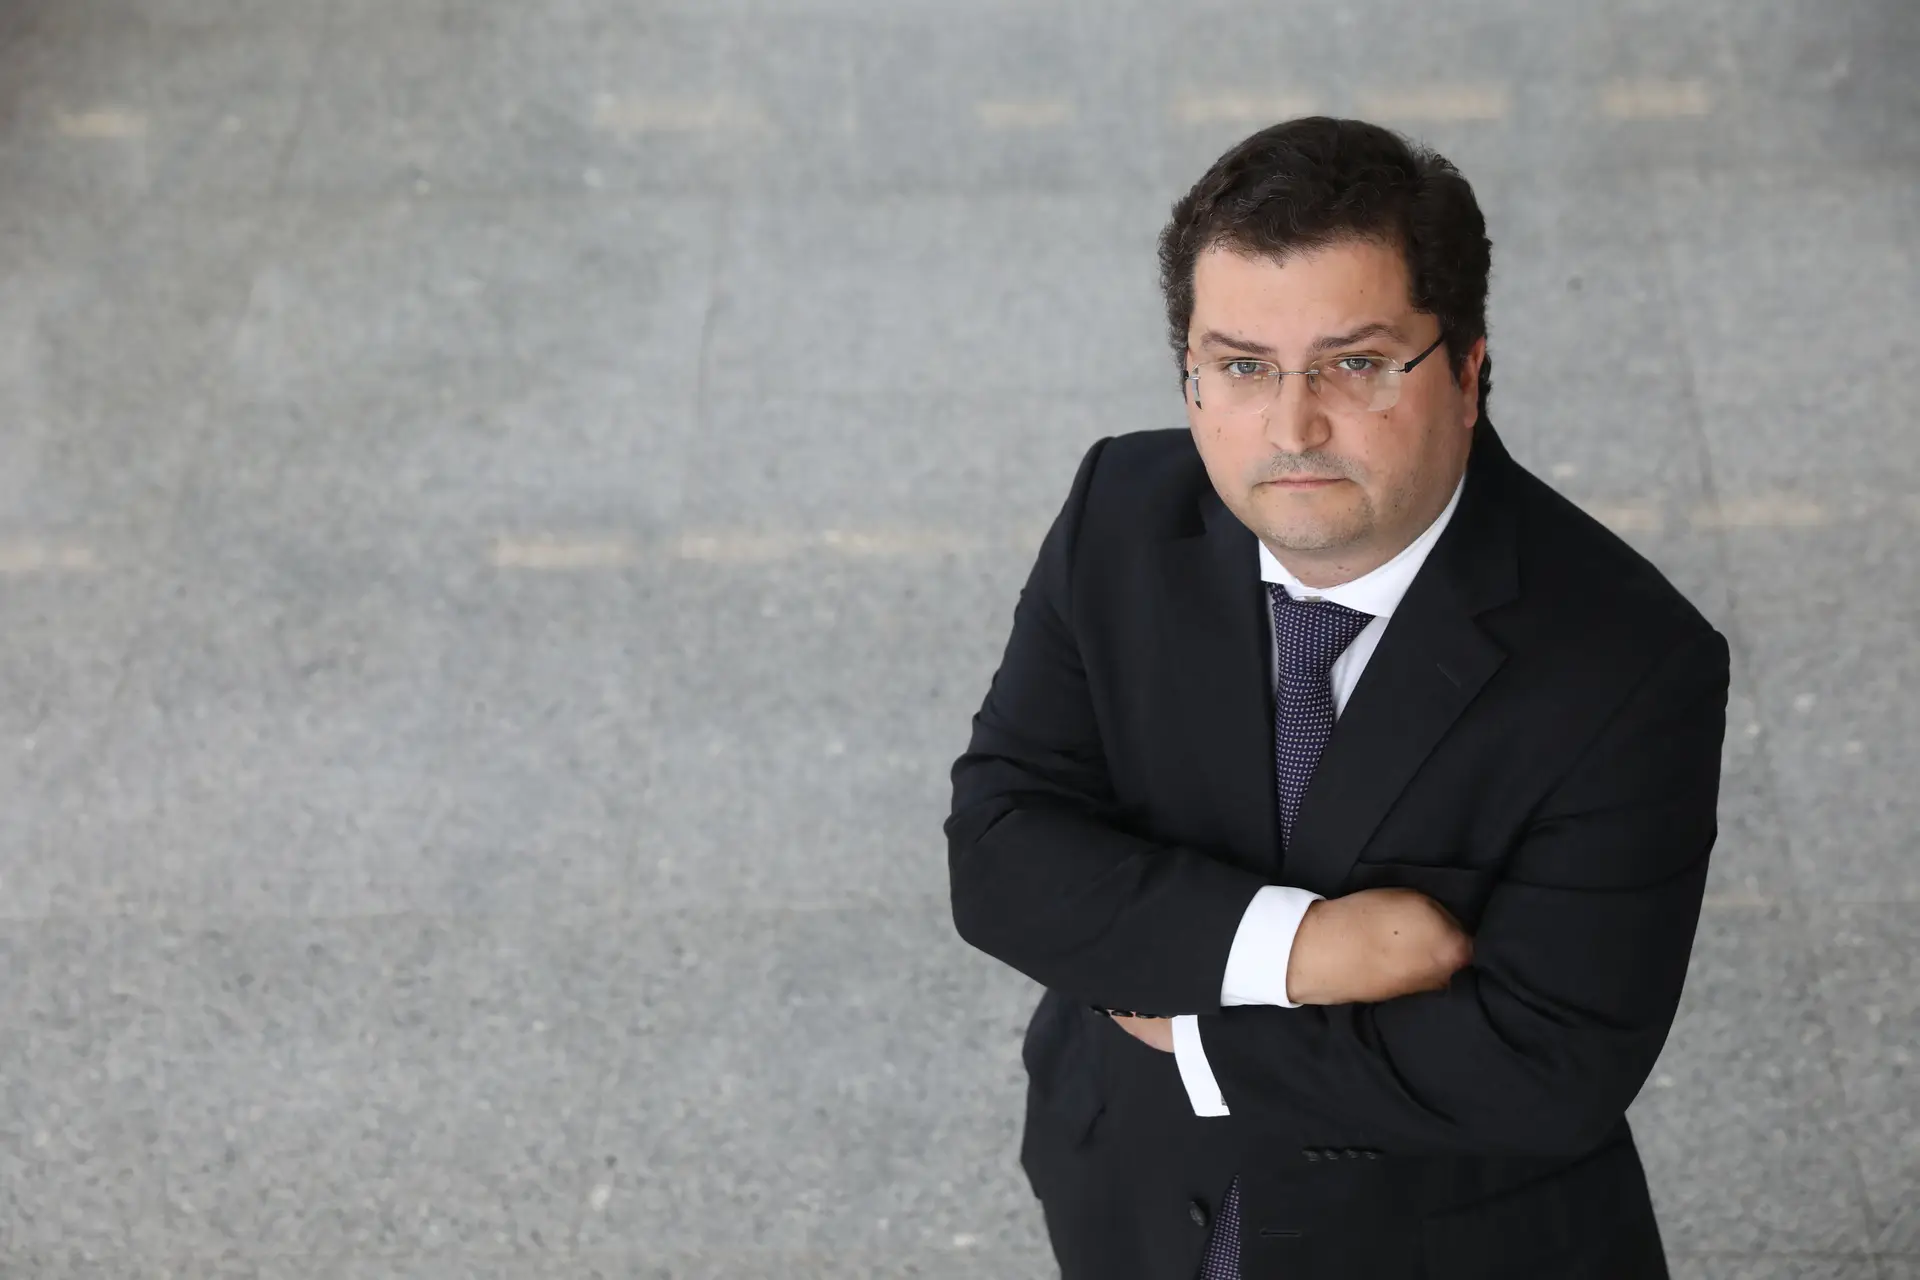 Crise/inflação: PSD concorda com a parte da leitura de Marcelo que elogia a ação do partido